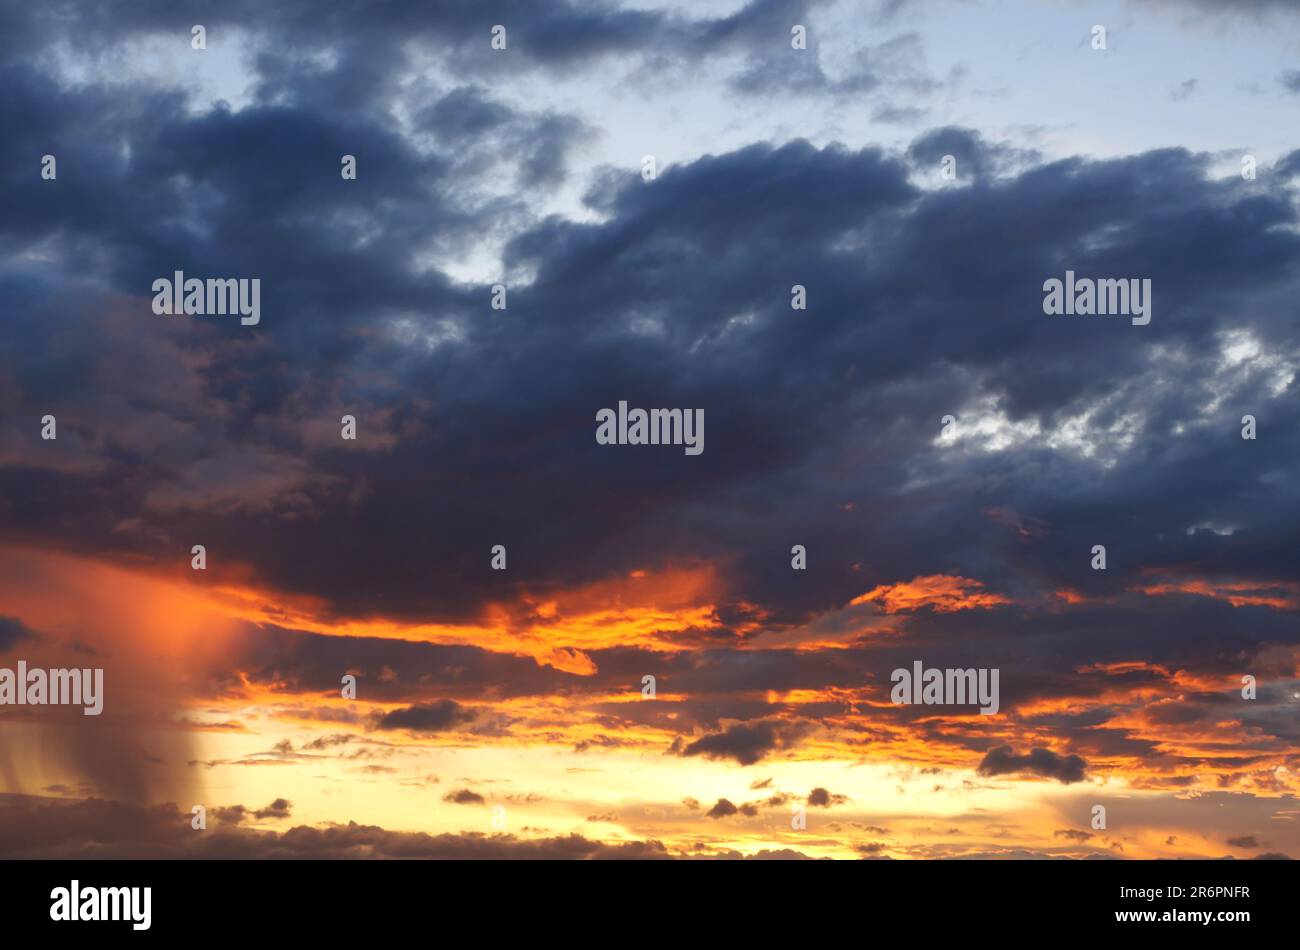 Nuvola e cielo blu in un'ora magica al tramonto, l'orizzonte cominciò a diventare arancione con nuvola viola di notte, drammatica area di paesaggio nuvoloso con caduta di pioggia Foto Stock